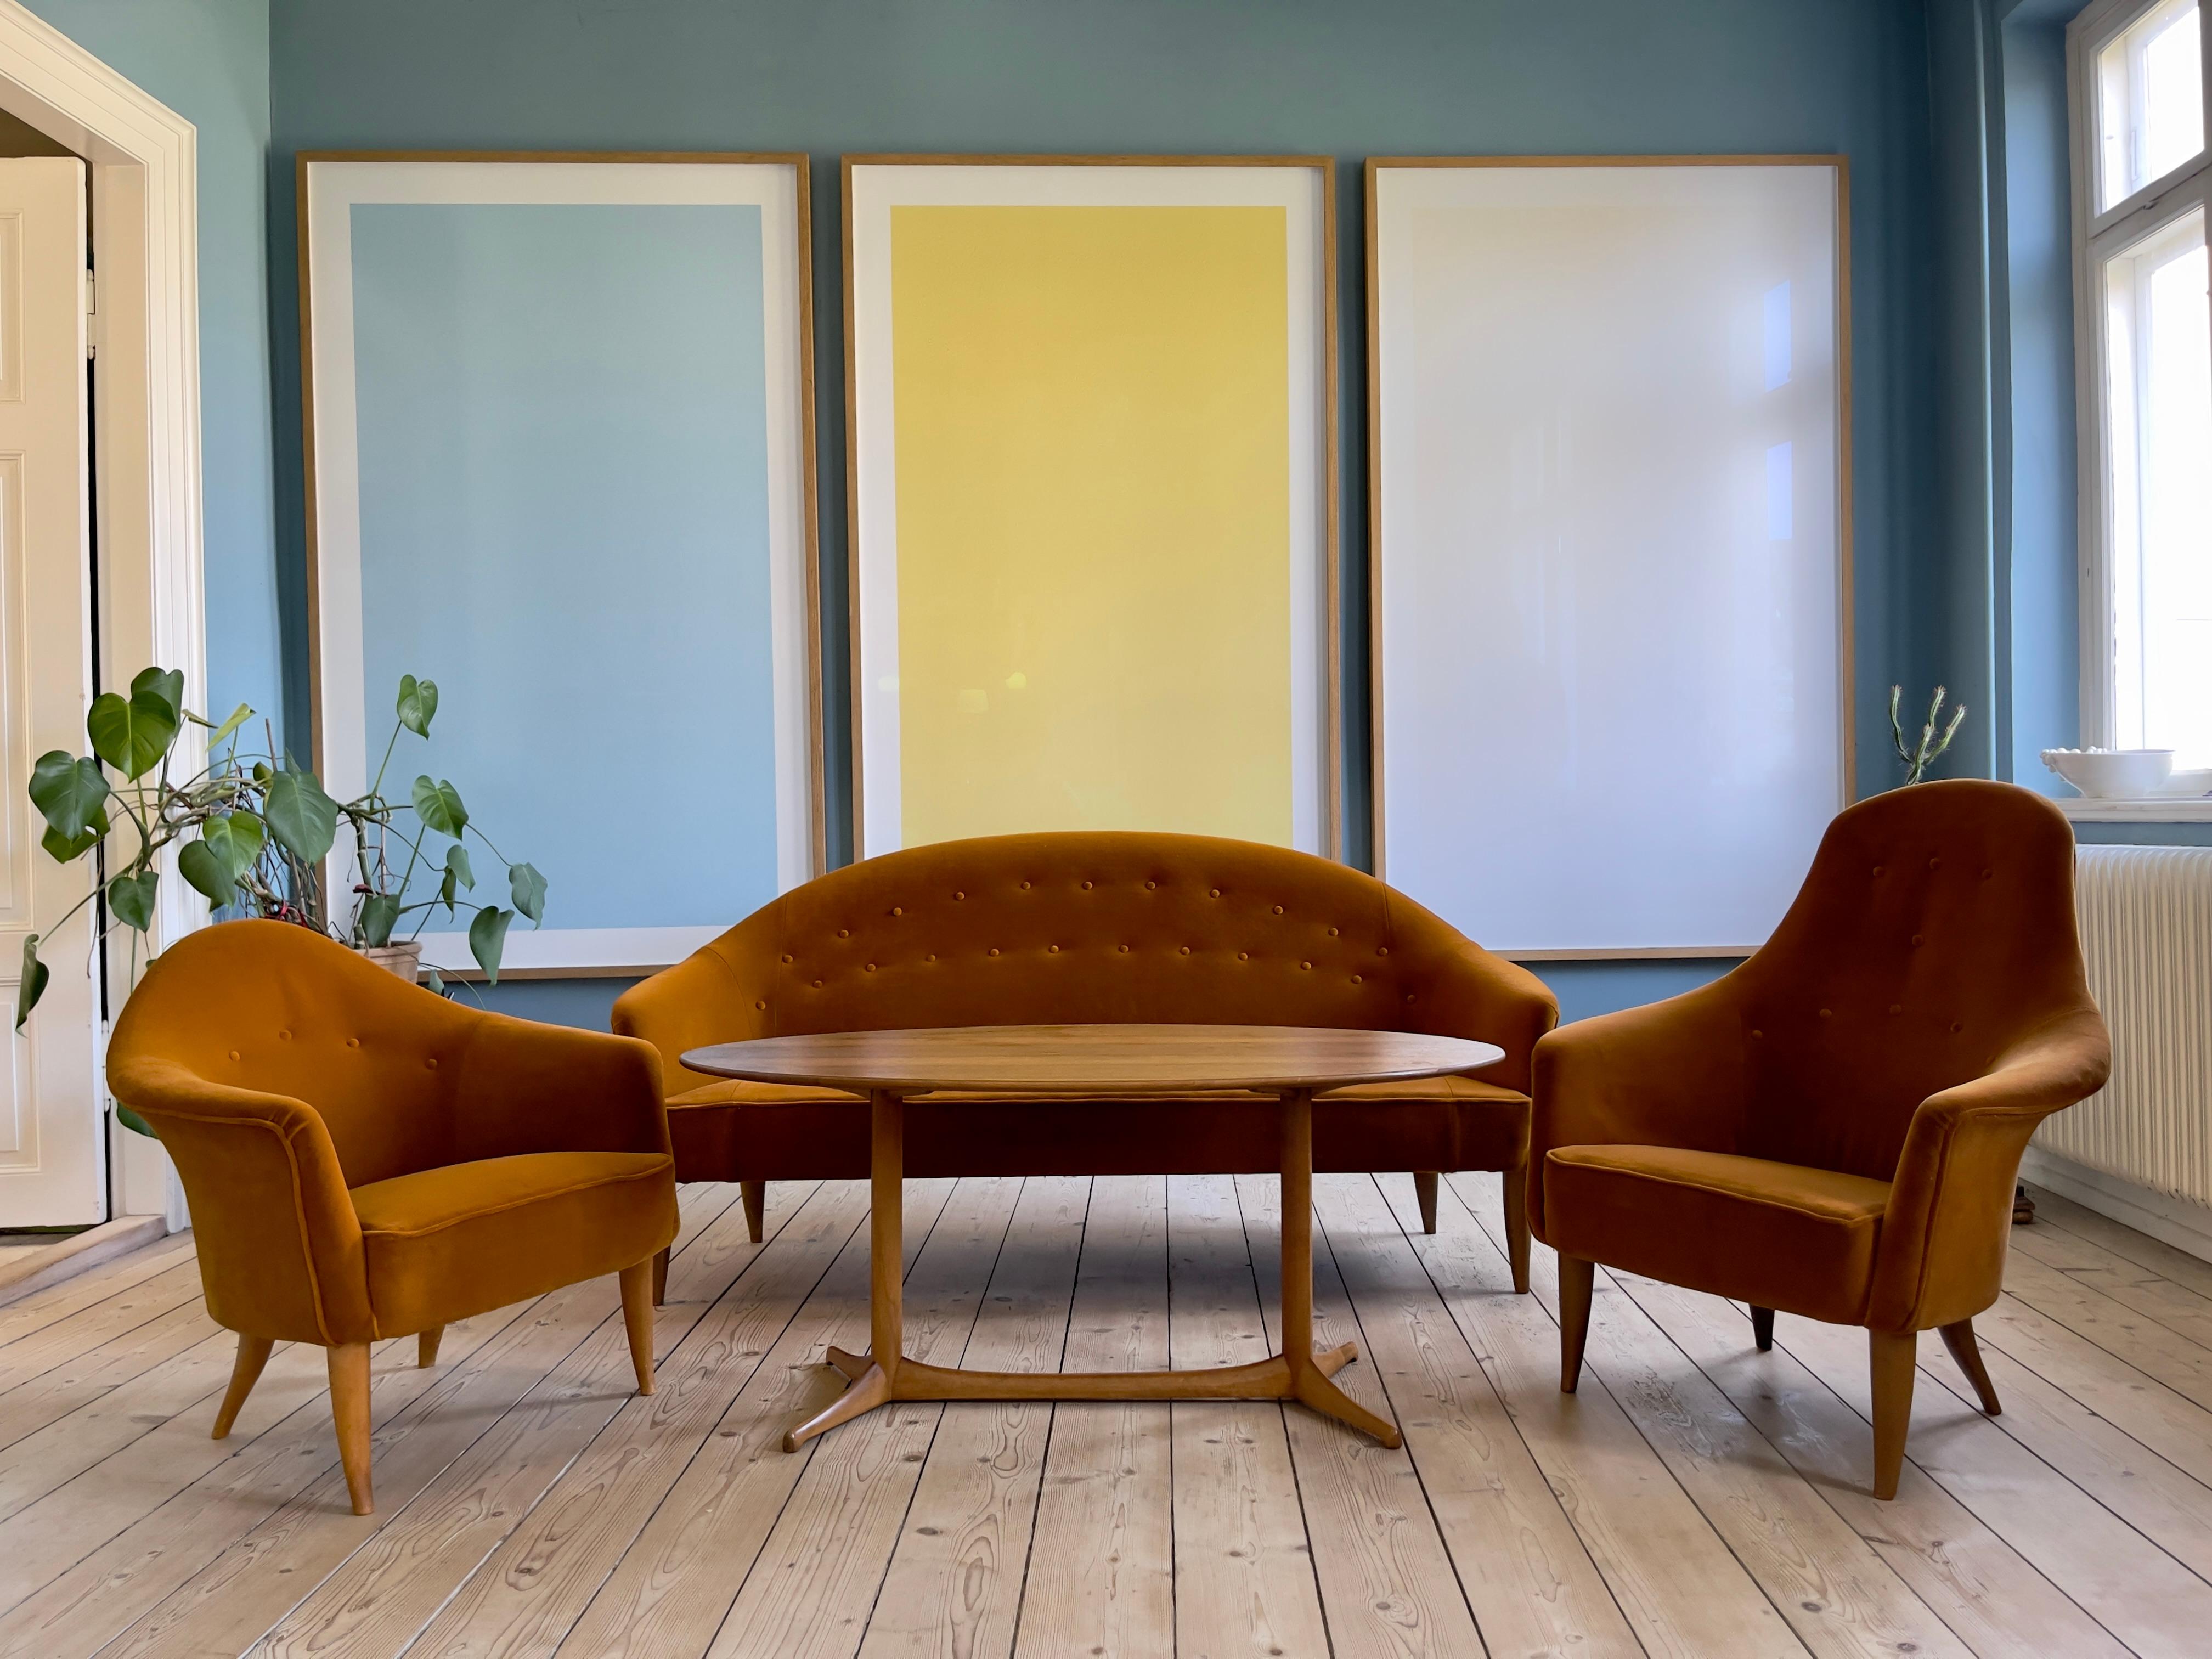 Rare ensemble complet de salon en velours couleur ambre. L'emblématique Collection Paradise de la série Triva, créée en 1958 par Kerstin Hörlin-Holmquist alors qu'elle était designer chez Nordiska Kompaniet, en Suède.
L'ensemble se compose de